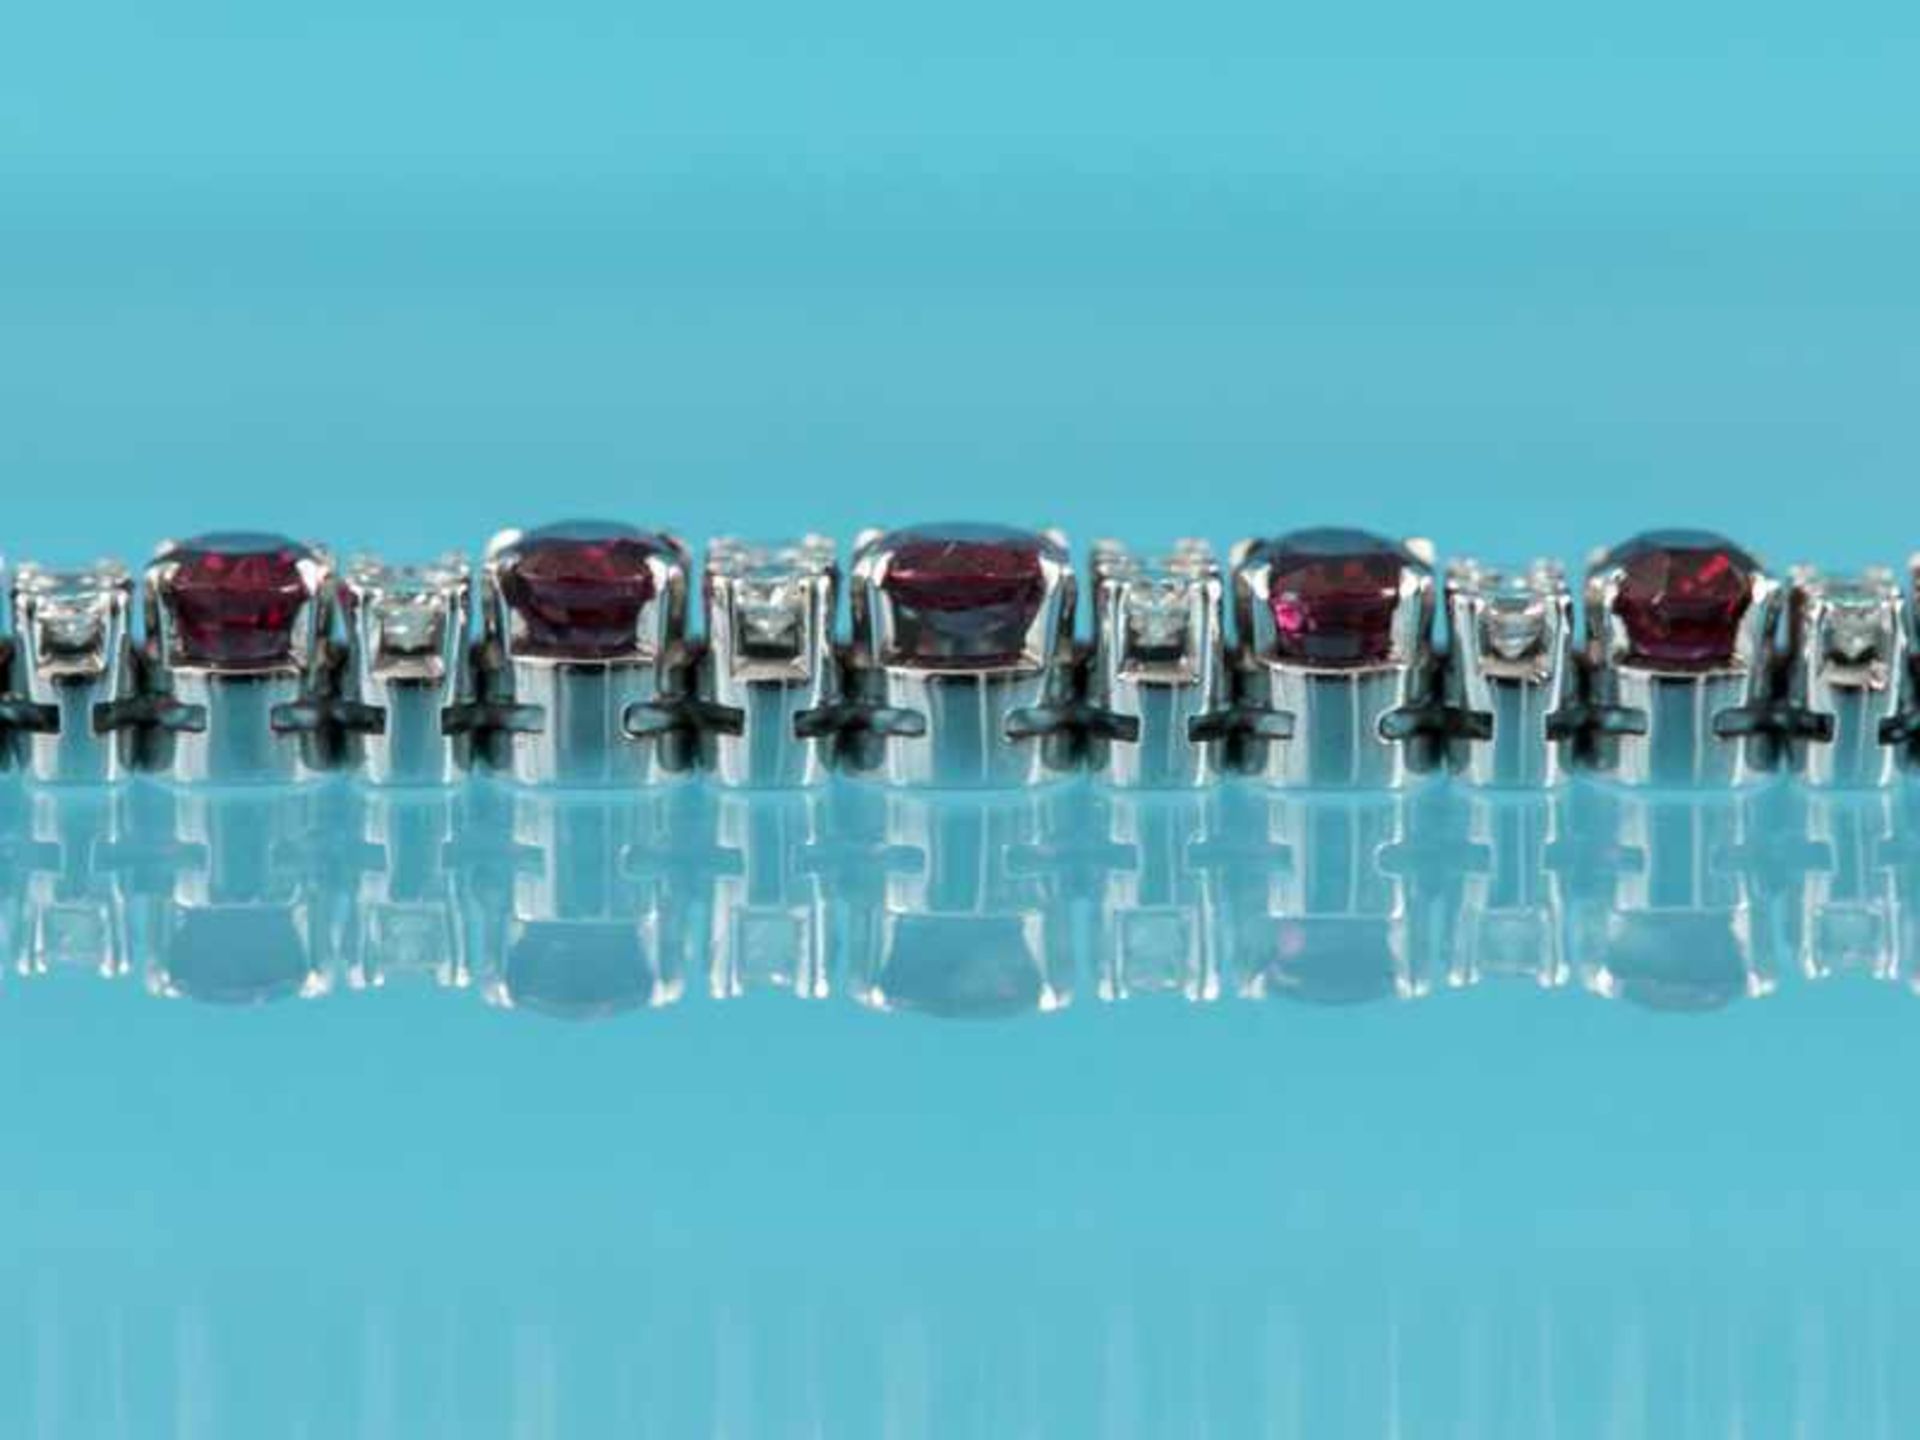 Armband mit 9 Rubinen, zusammen ca. 5 ct und 16 Brillanten, zusammen ca. 0,8 ct, Juweliersarbeit, - Bild 5 aus 5